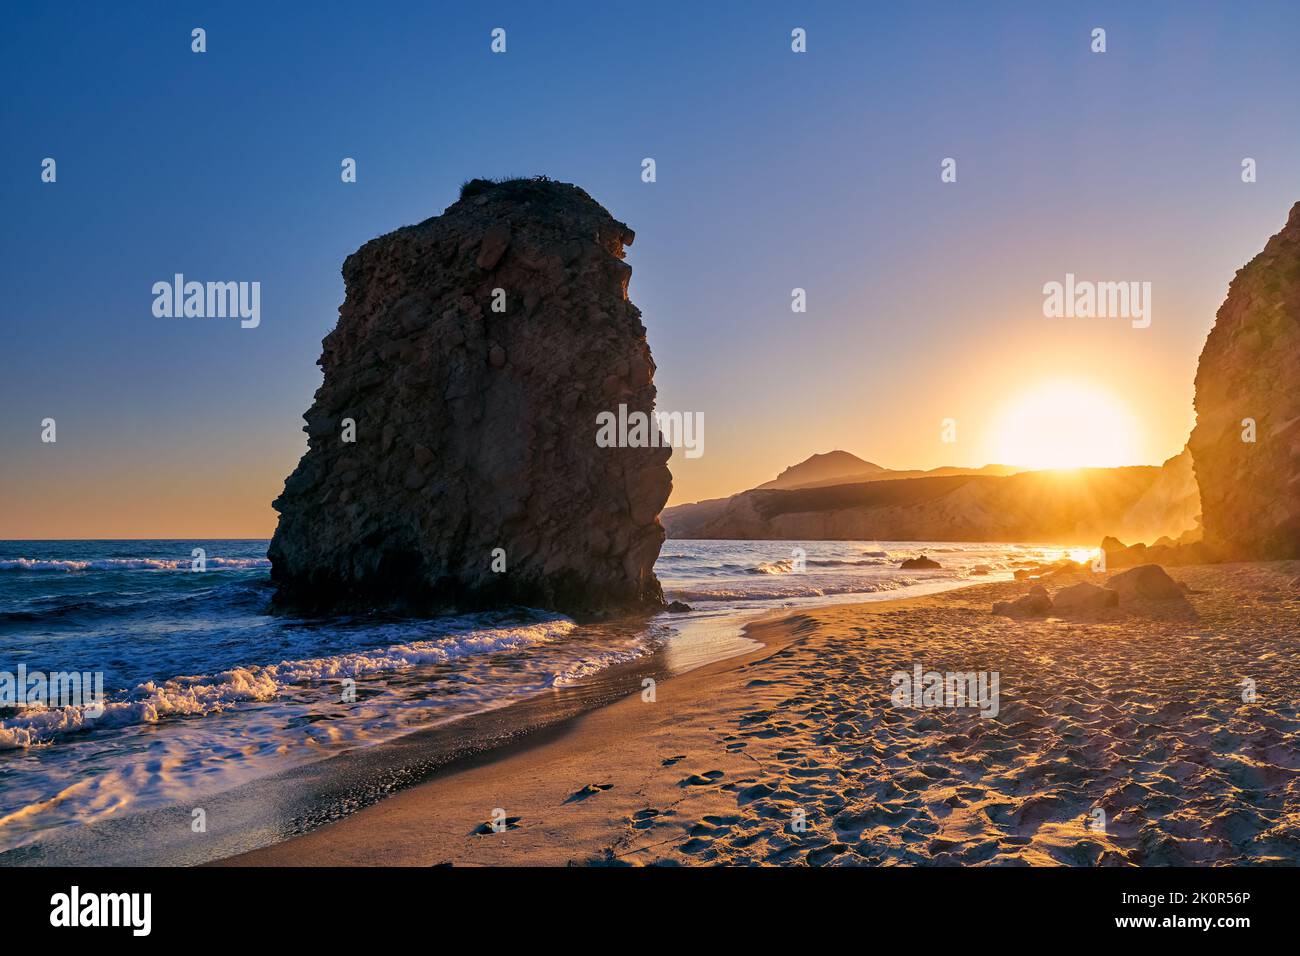 Farbenfroher Sonnenuntergang am Strand von Fyriplaka, Milos, Griechenland. Keine Menschen, niedrige Sonne. Ikonischer Fyriplaka einsamer Felsen gegen niedrige Sonne, farbenfrohen Himmel und Meer Stockfoto